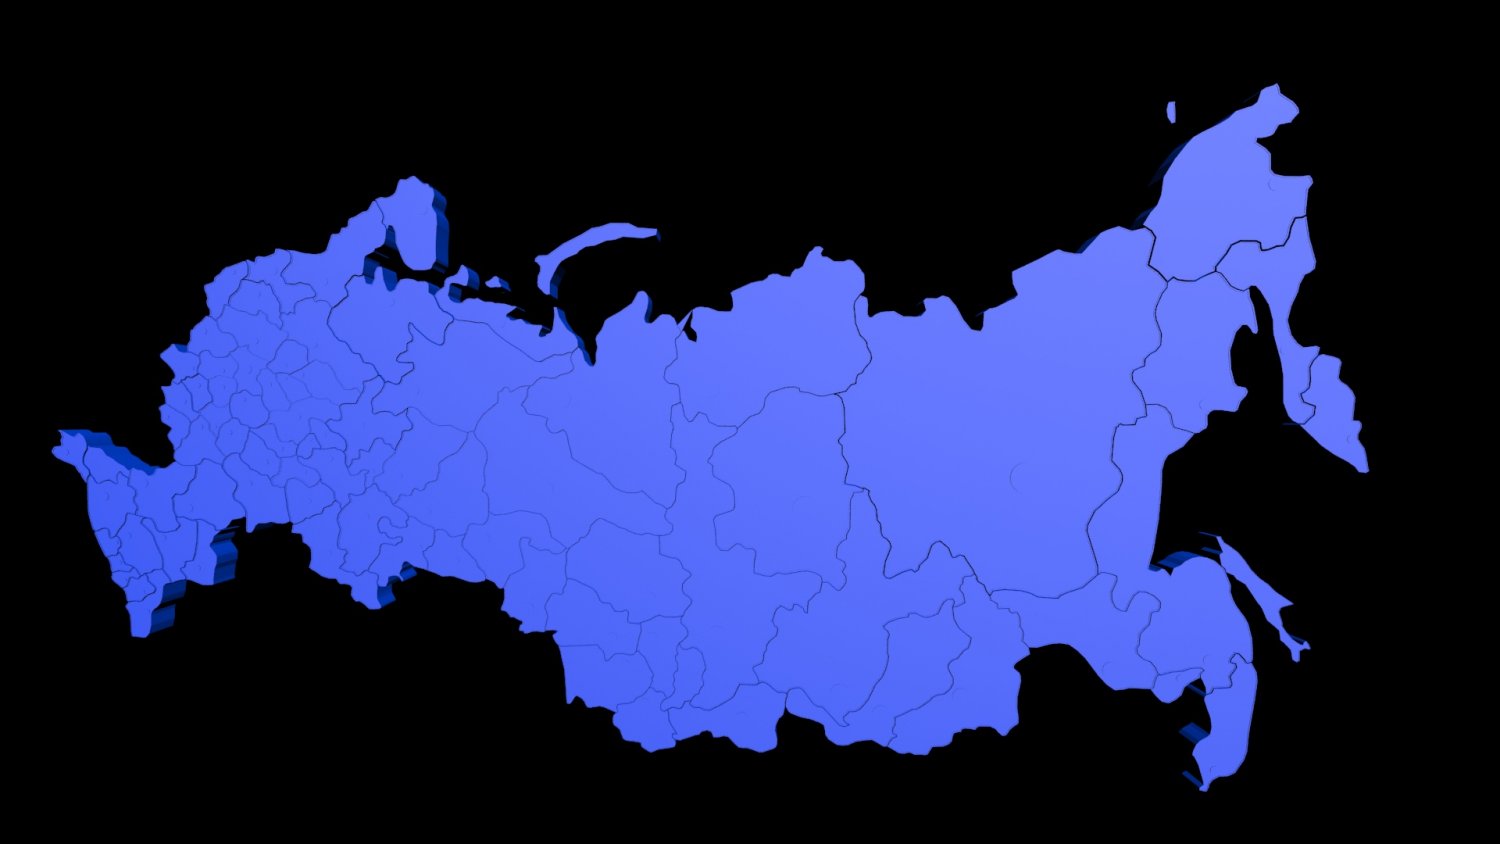 B0k3p russia. Карта России. Карта России темная. Карта России макет. Территория России.